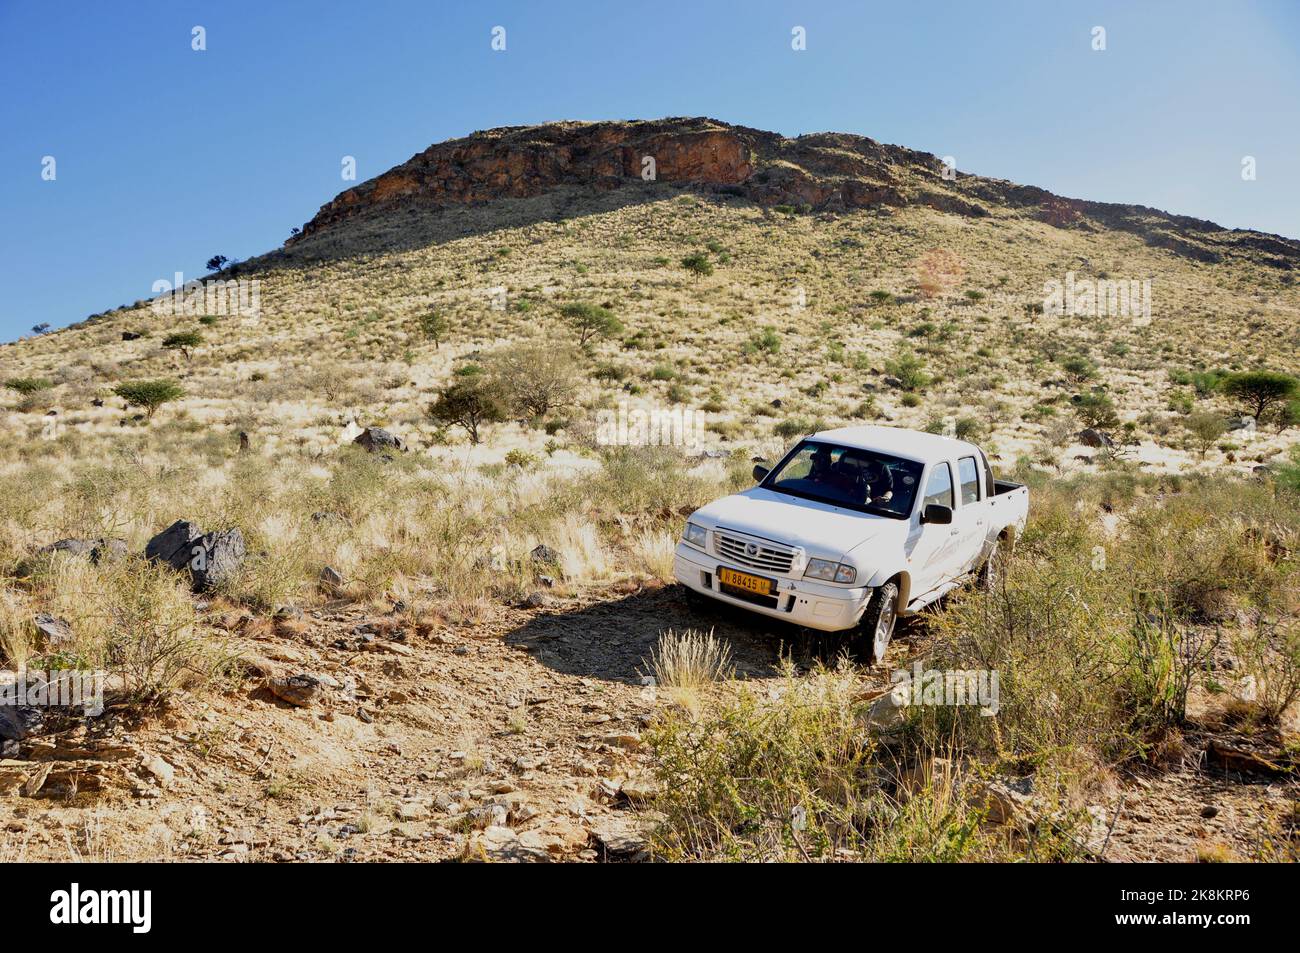 Abenteuerliche Offroad-Fahrt durchs felsige Gelände in der Rergion Retoog im Hardap. Adventure Offroad-trip through the desert in the region of Retdoo Stock Photo